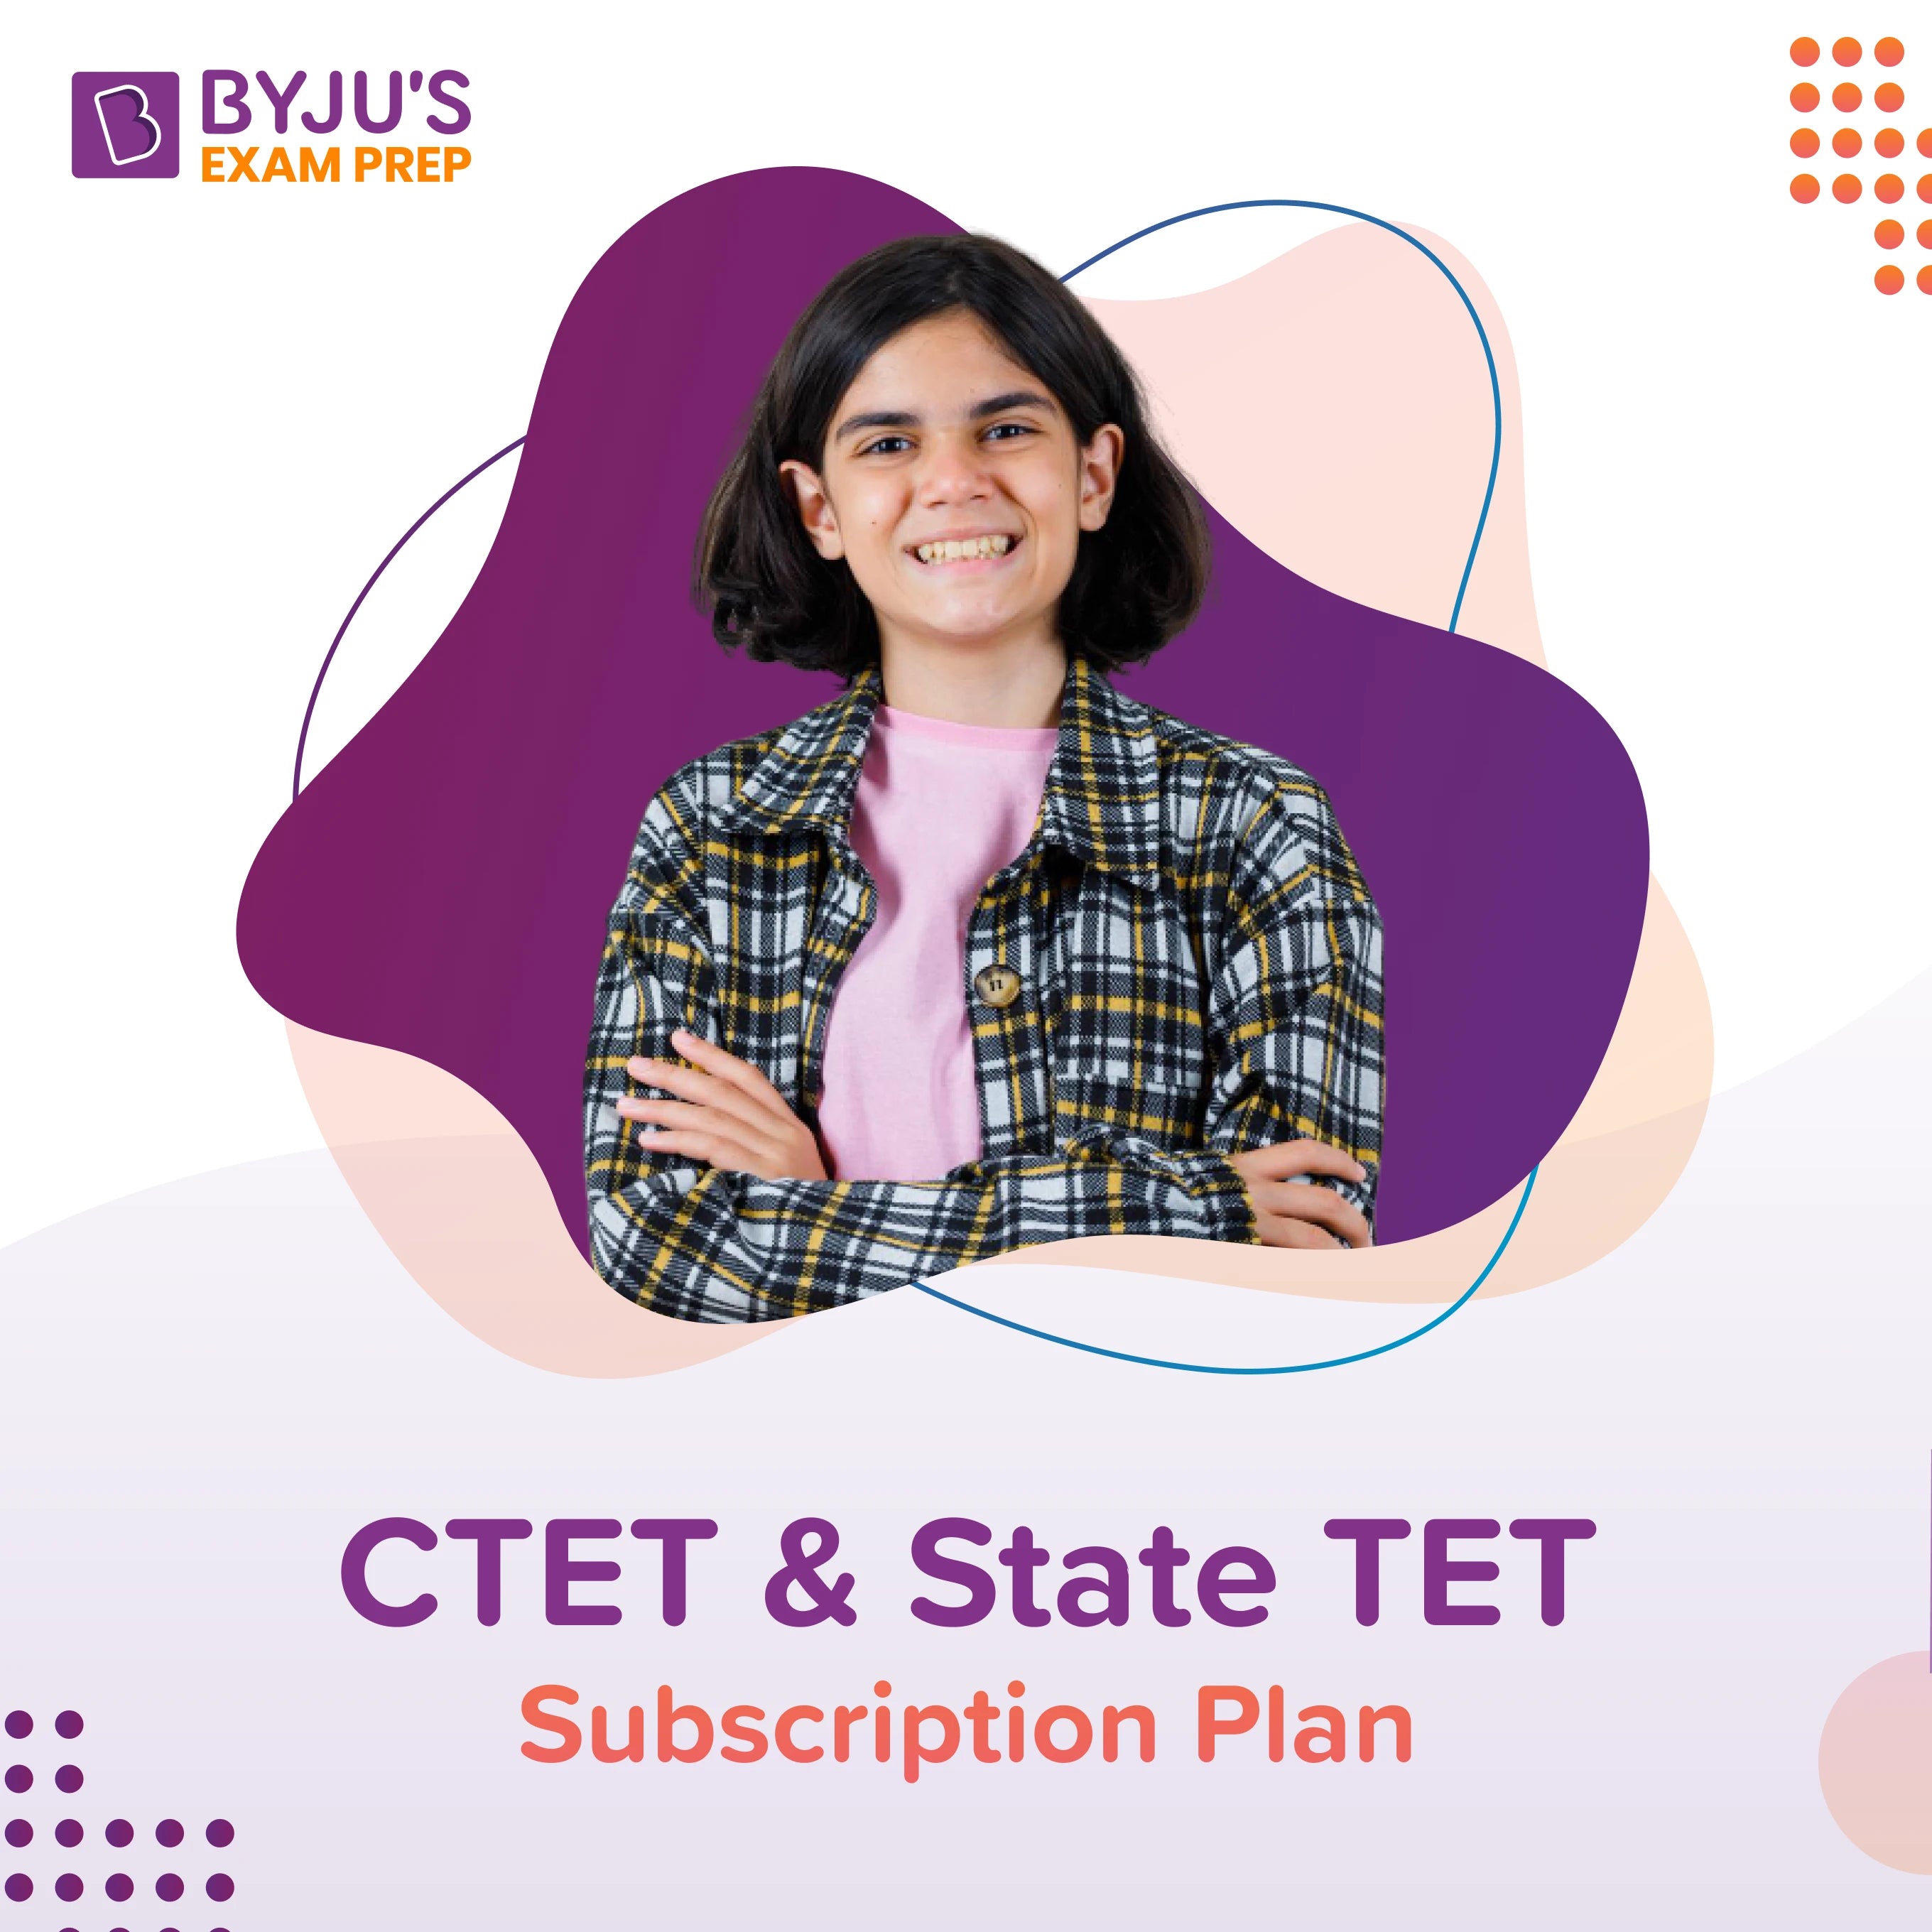 CTET & State TET - Subscription Plan